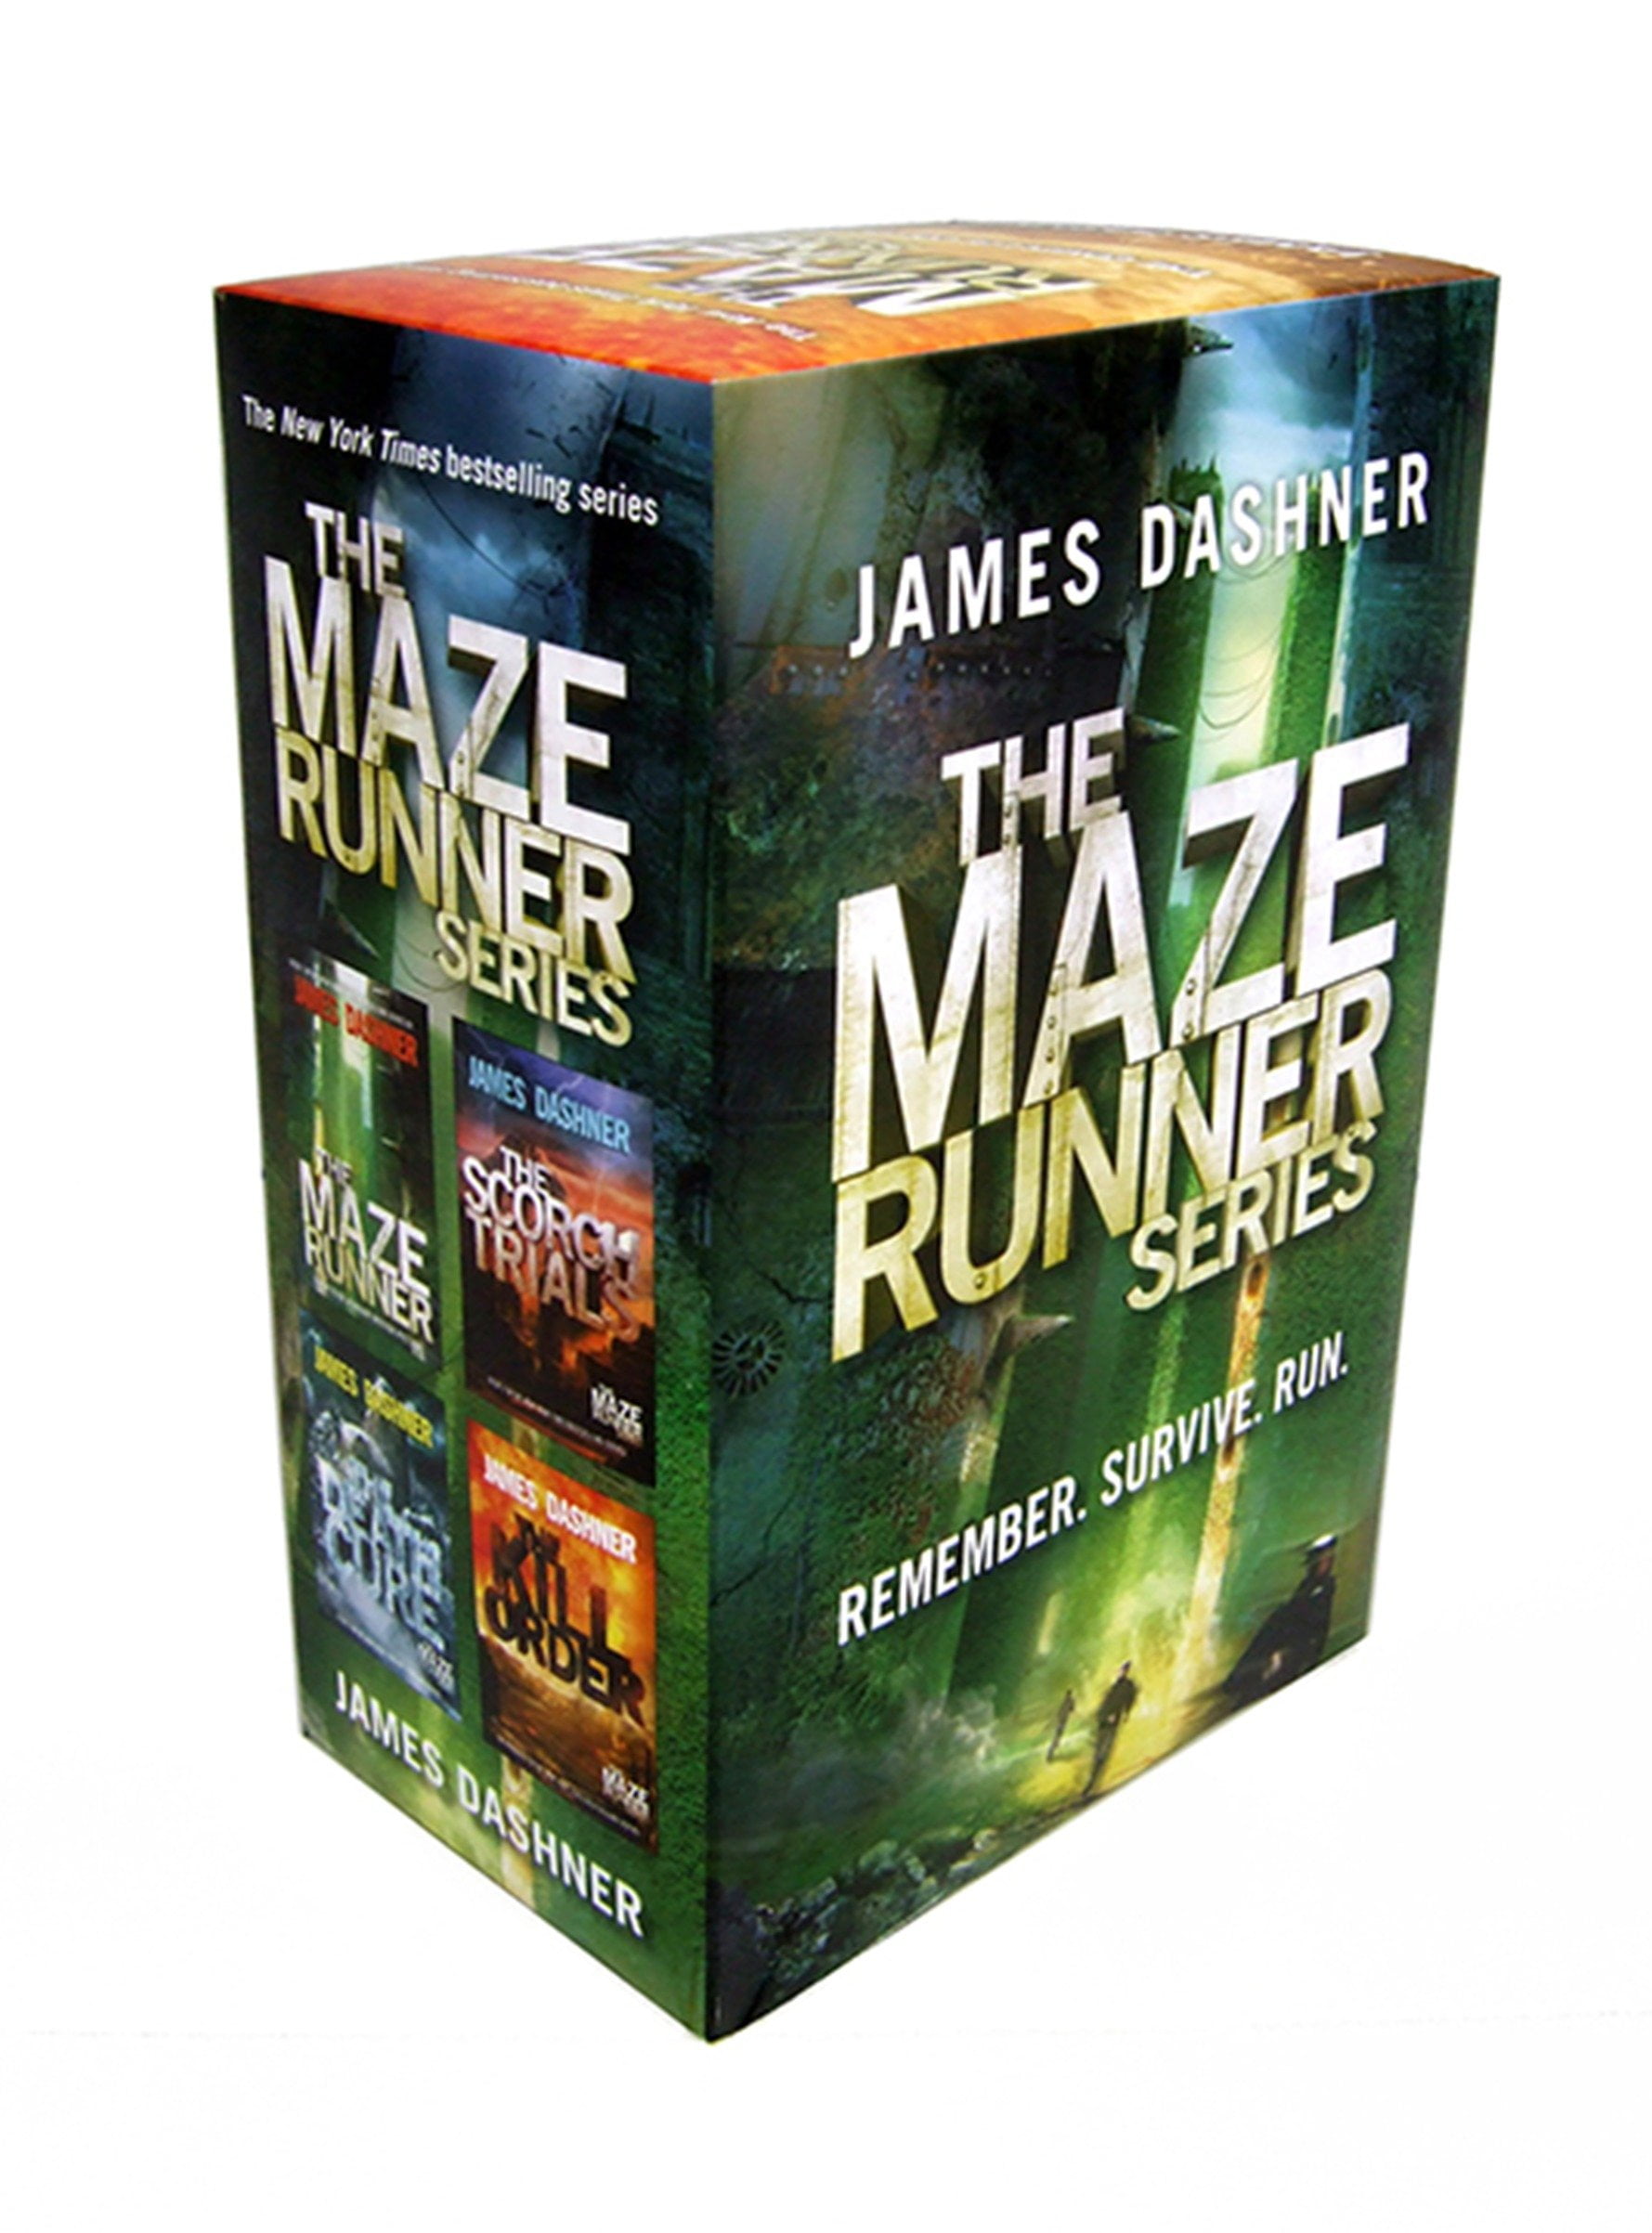 book review of maze runner